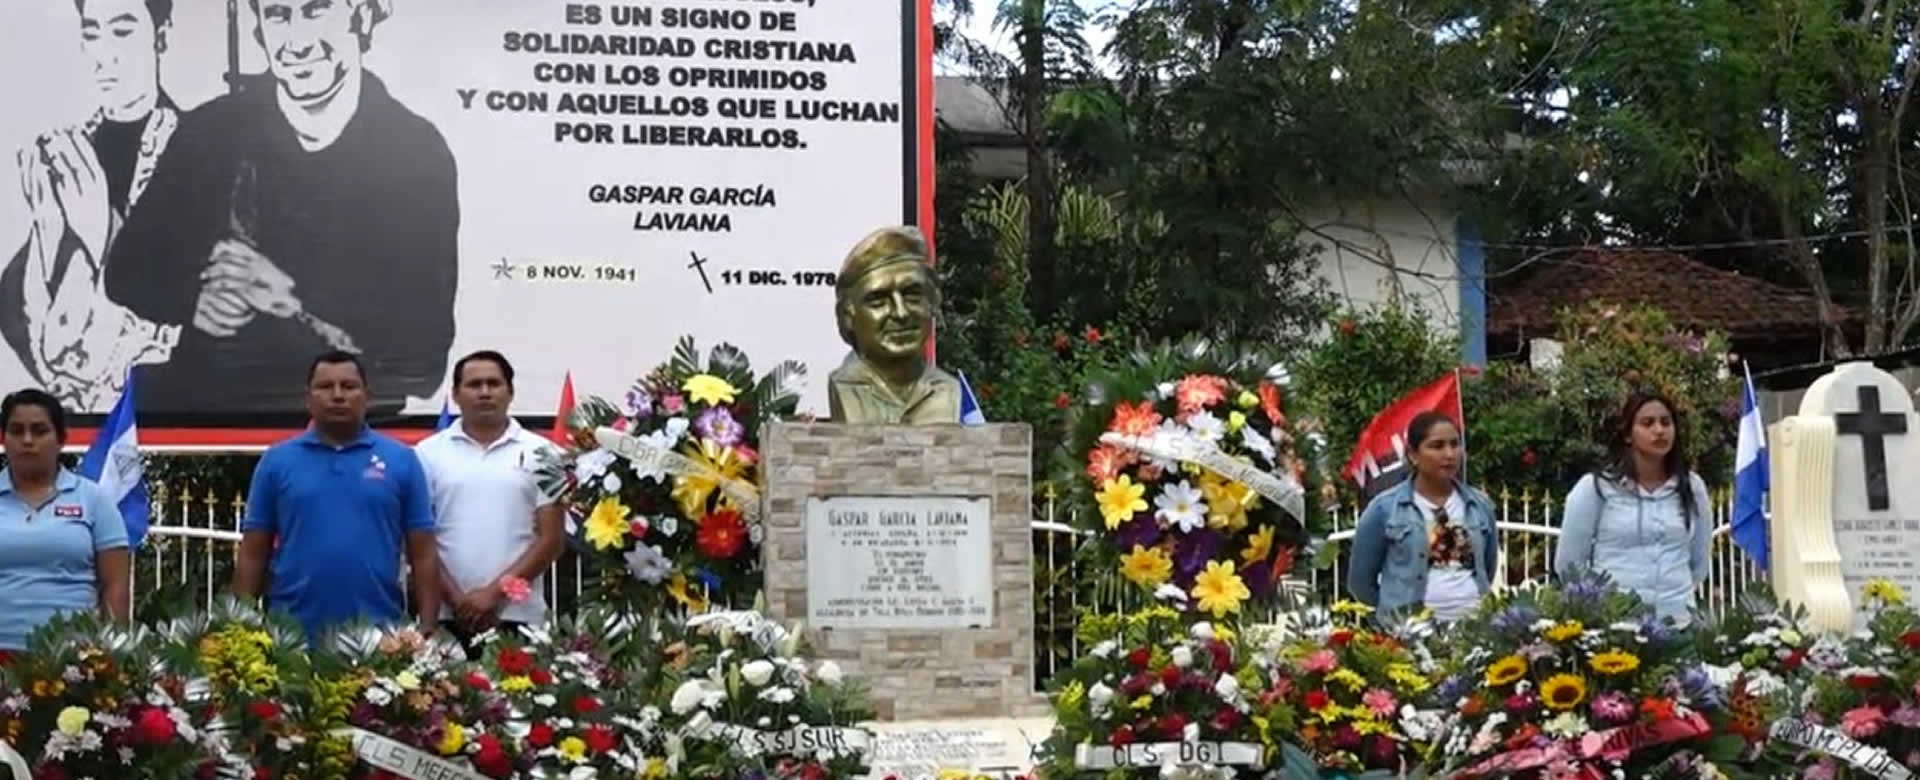 Rivas: Familias rinden tributo al Comandante Gaspar García Laviana